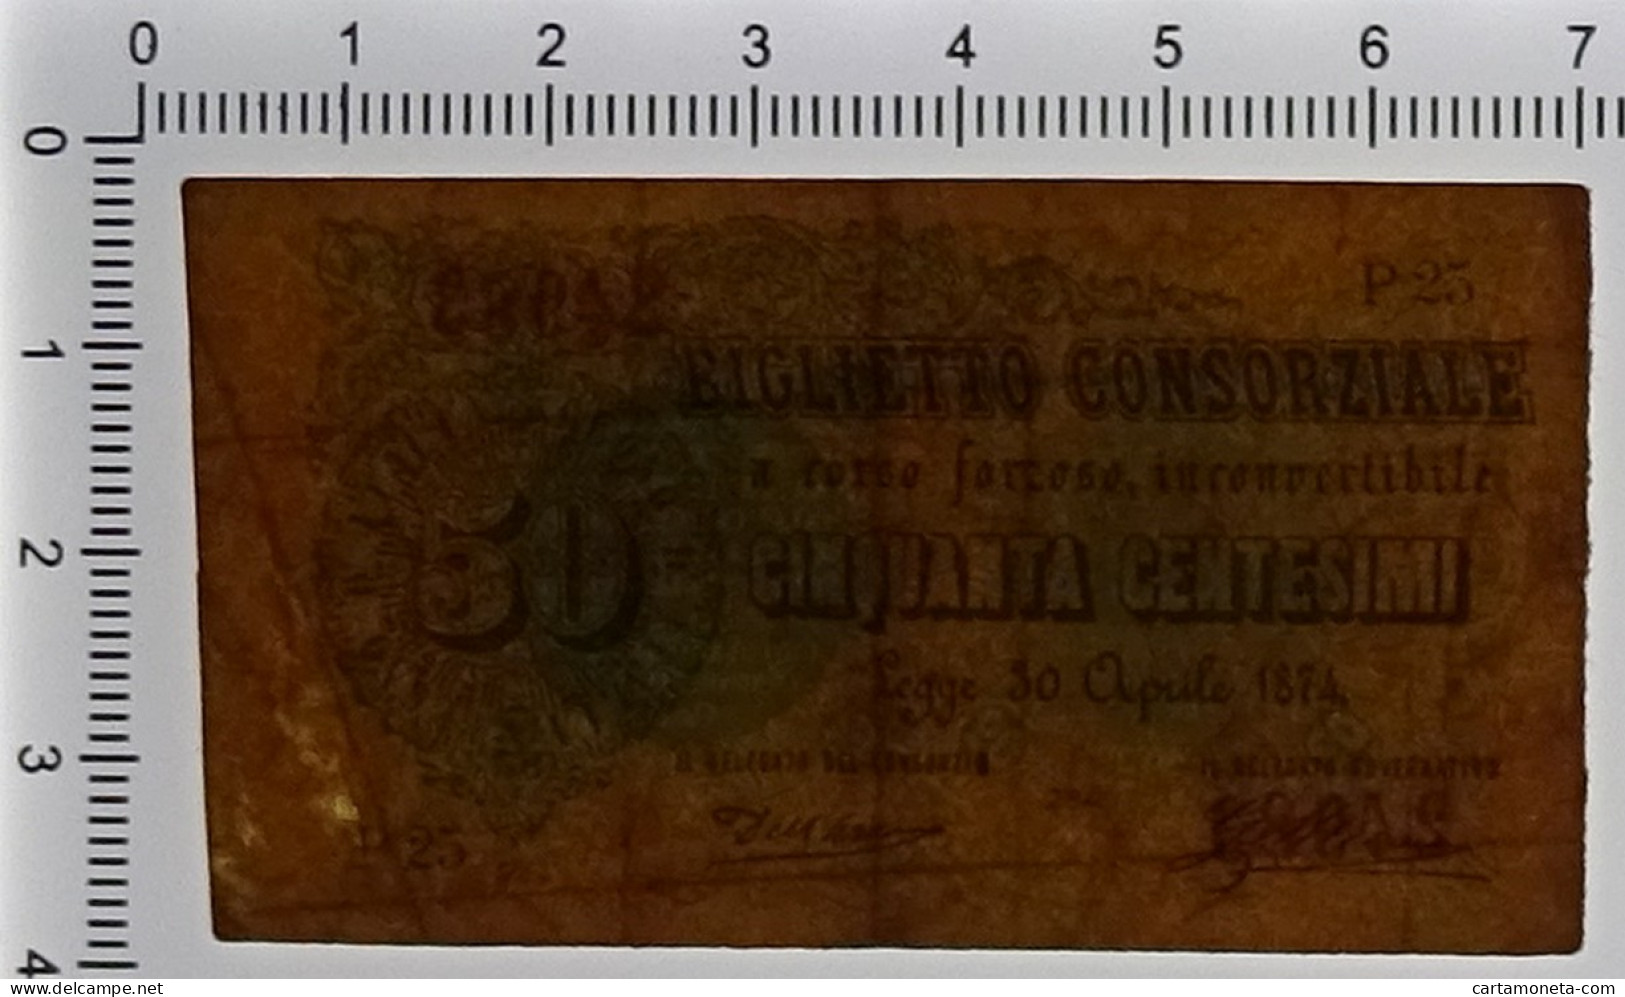 50 CENTESIMI BIGLIETTO CONSORZIALE REGNO D'ITALIA 30/04/1874 BB/BB+ - Biglietti Consorziale